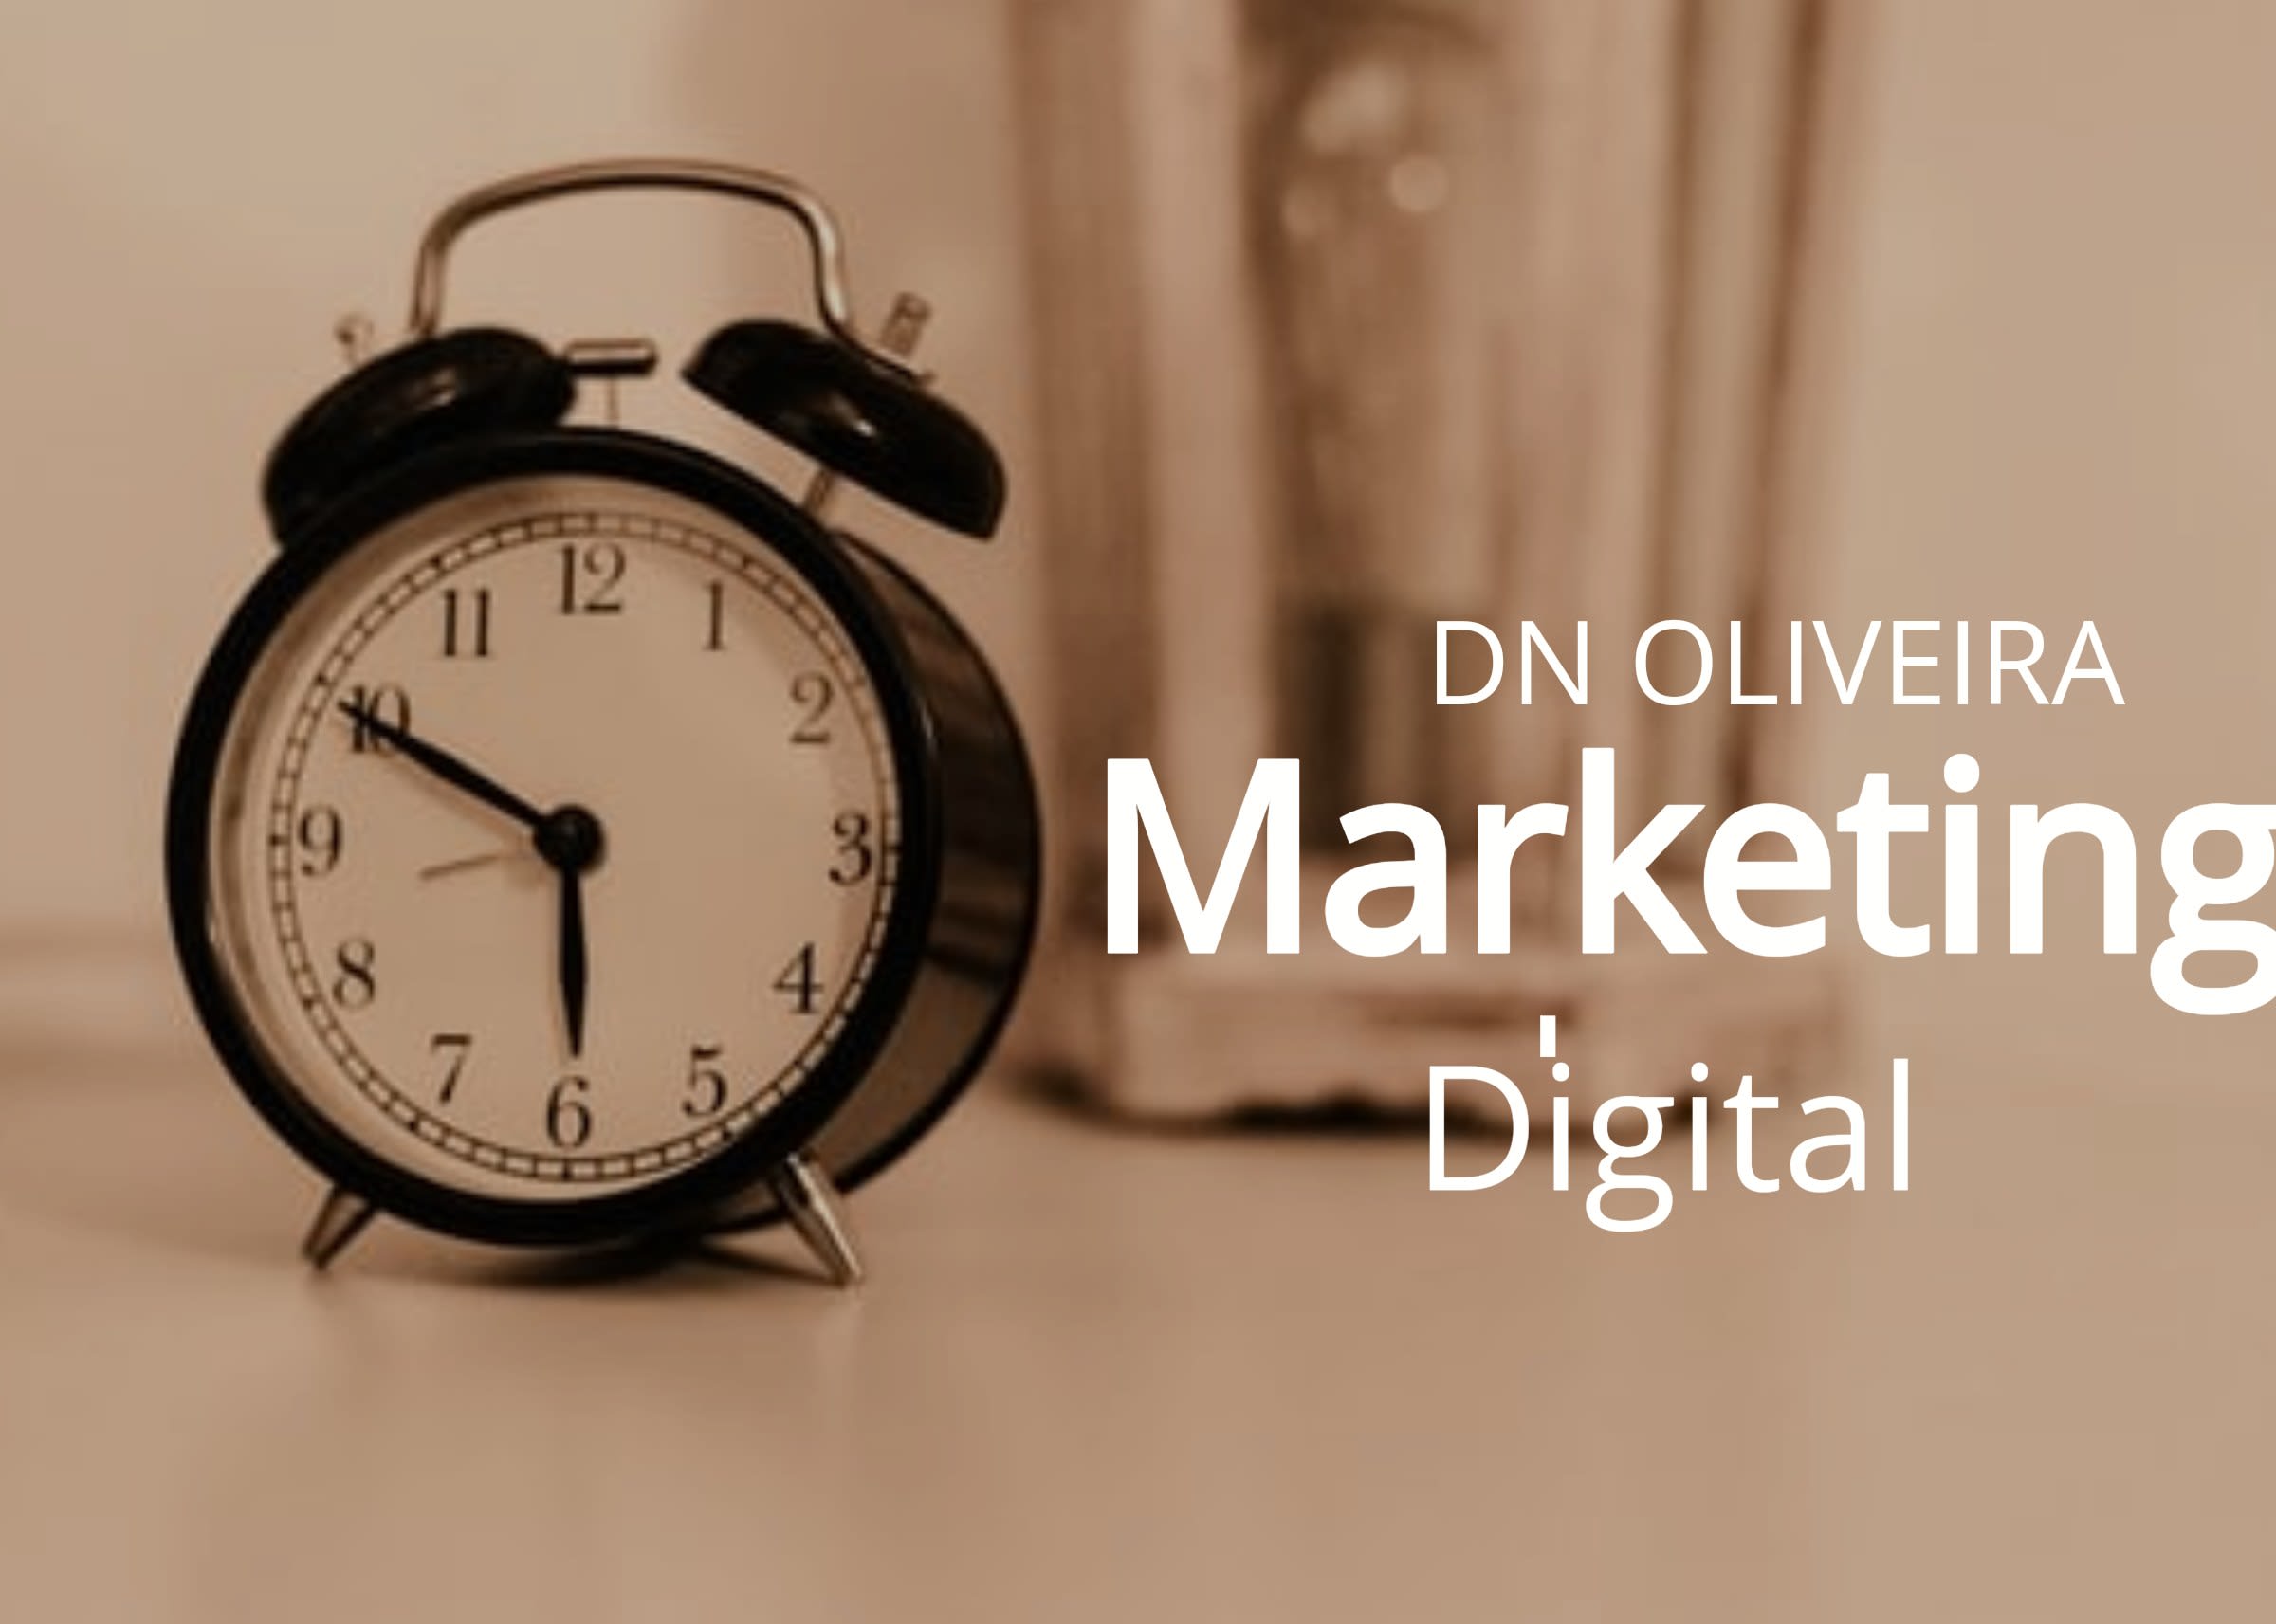 DN Oliveira Marketing Digital